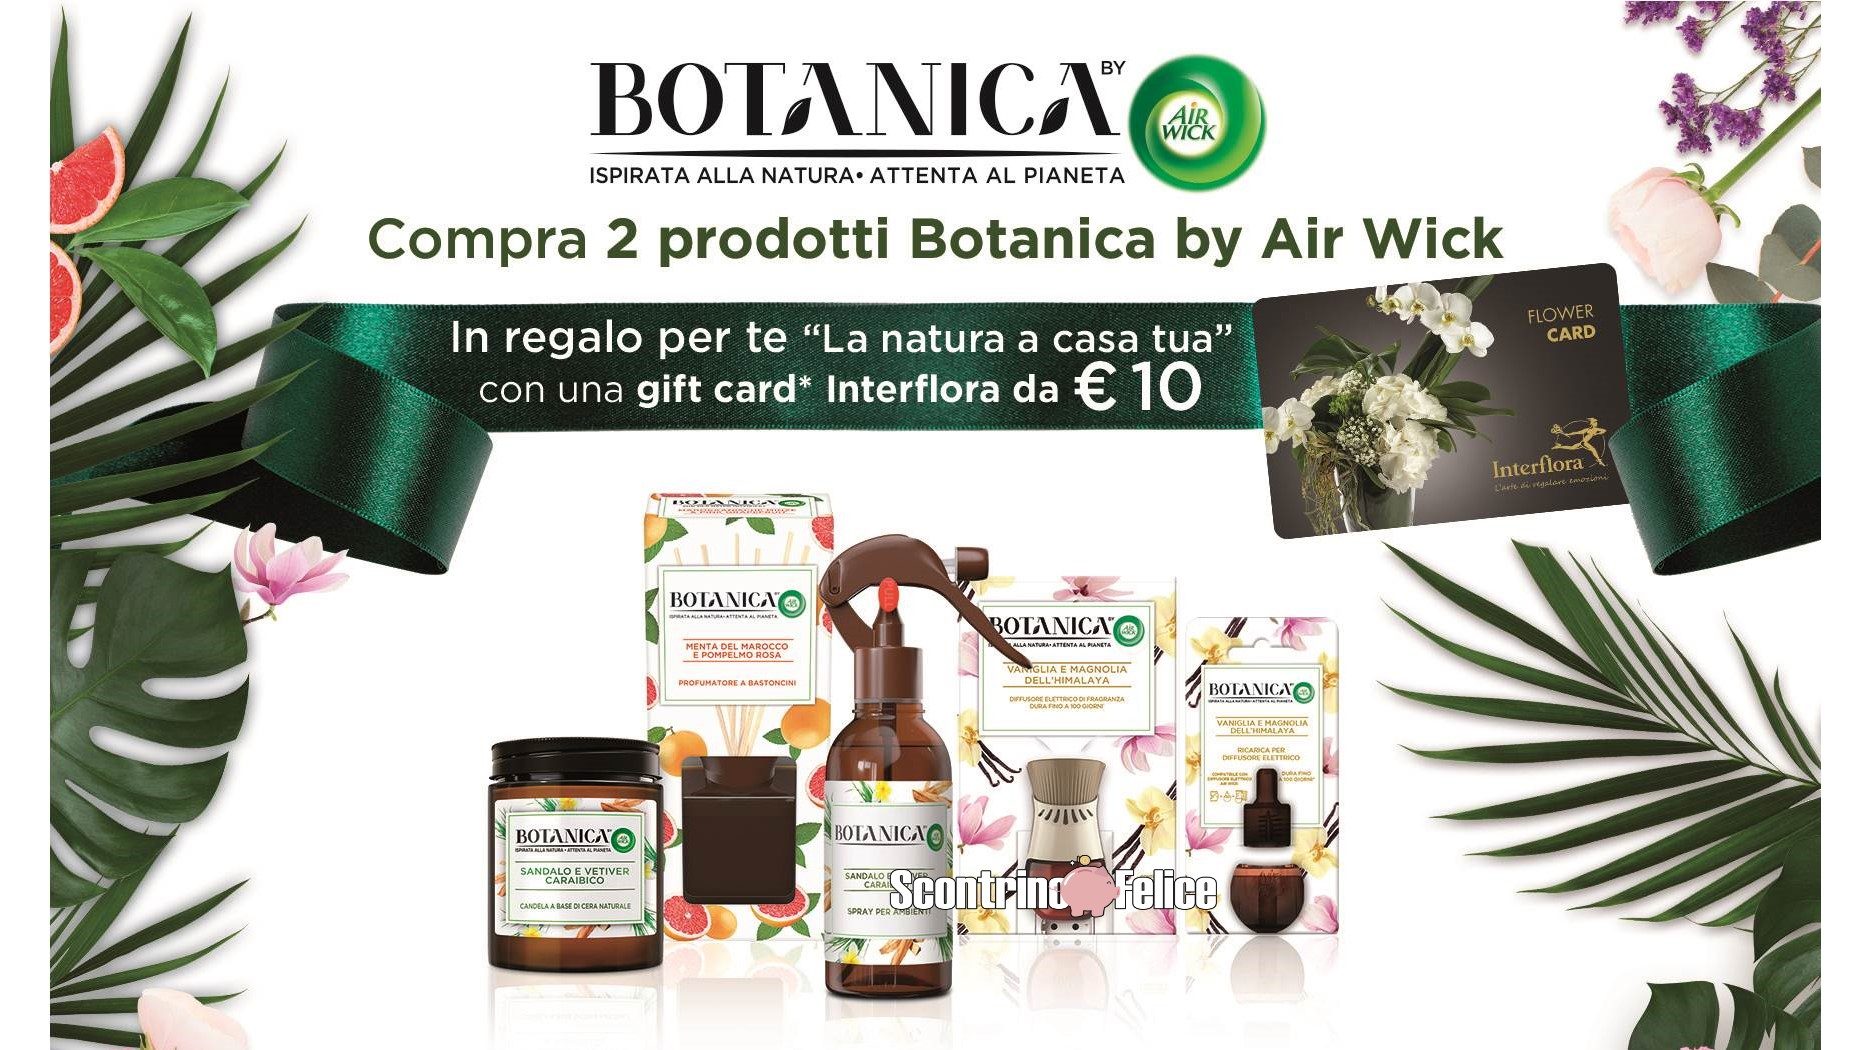 Acquista Botanica by Air Wick e ricevi un buono Interflora da 10 euro come premio sicuroAcquista Botanica by Air Wick e ricevi un buono Interflora da 10 euro come premio sicuro